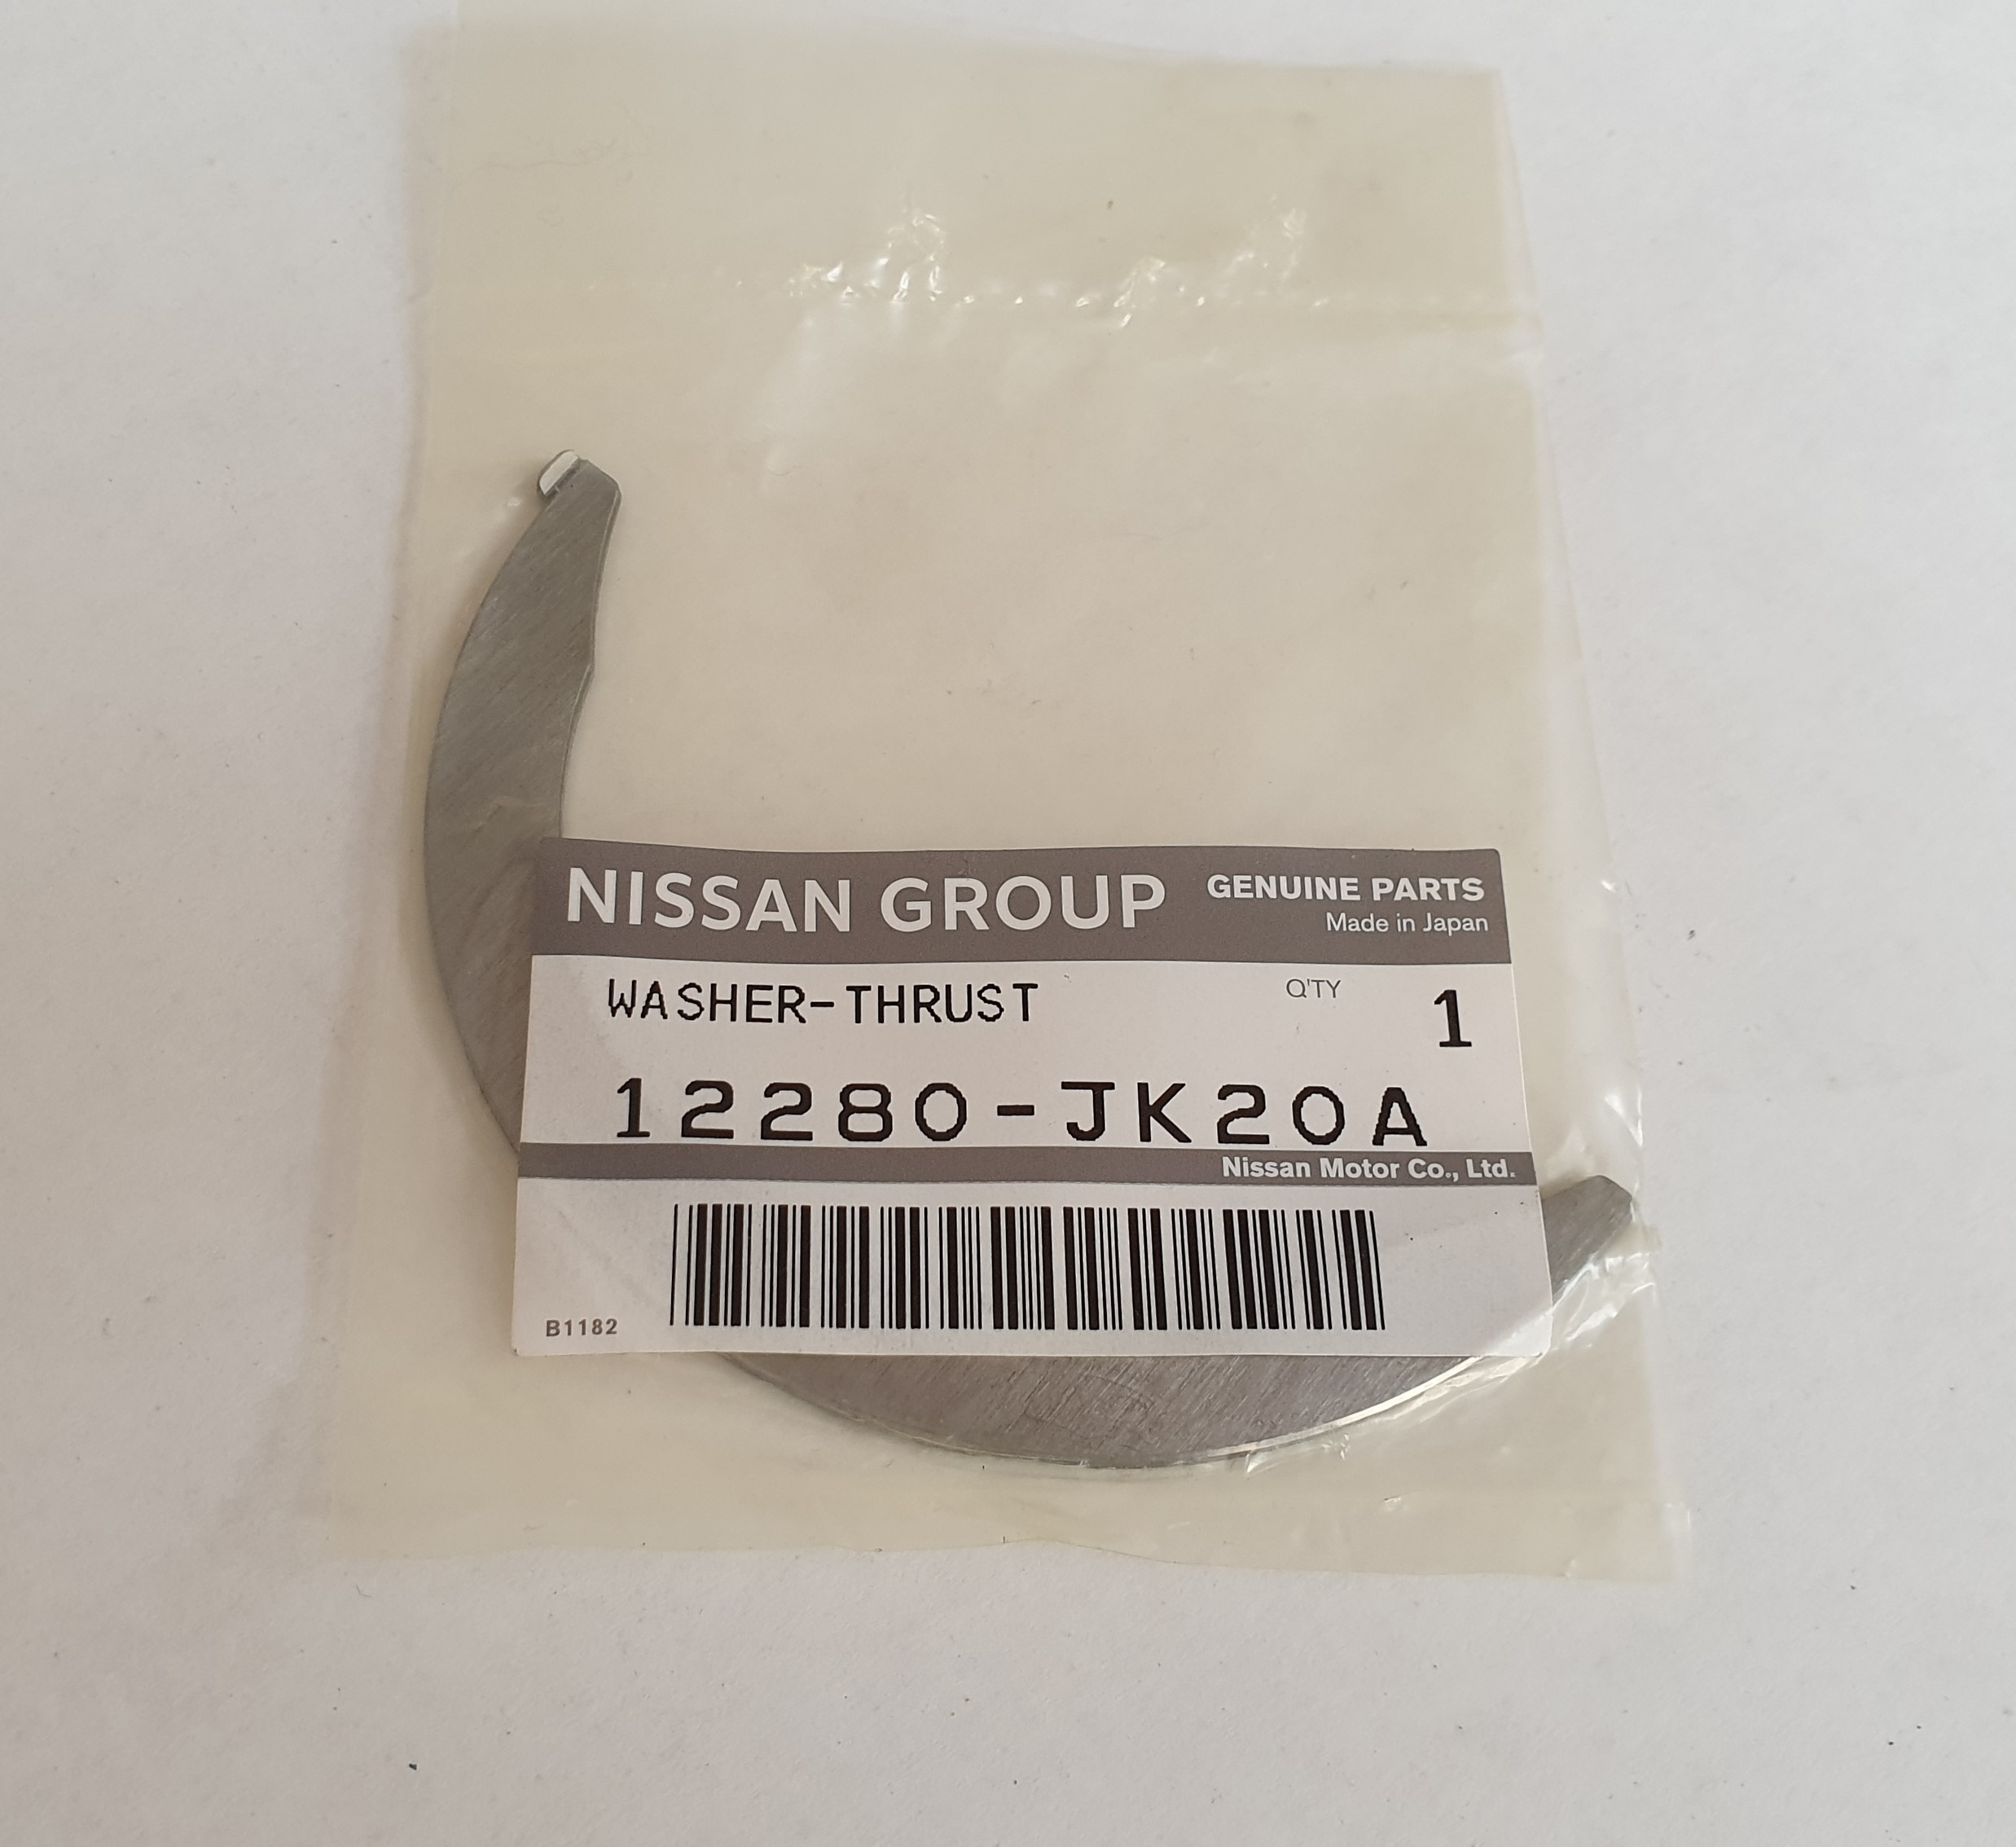 Nissan VR38 axiaallager - 12280-JK20A - Klik om te sluiten